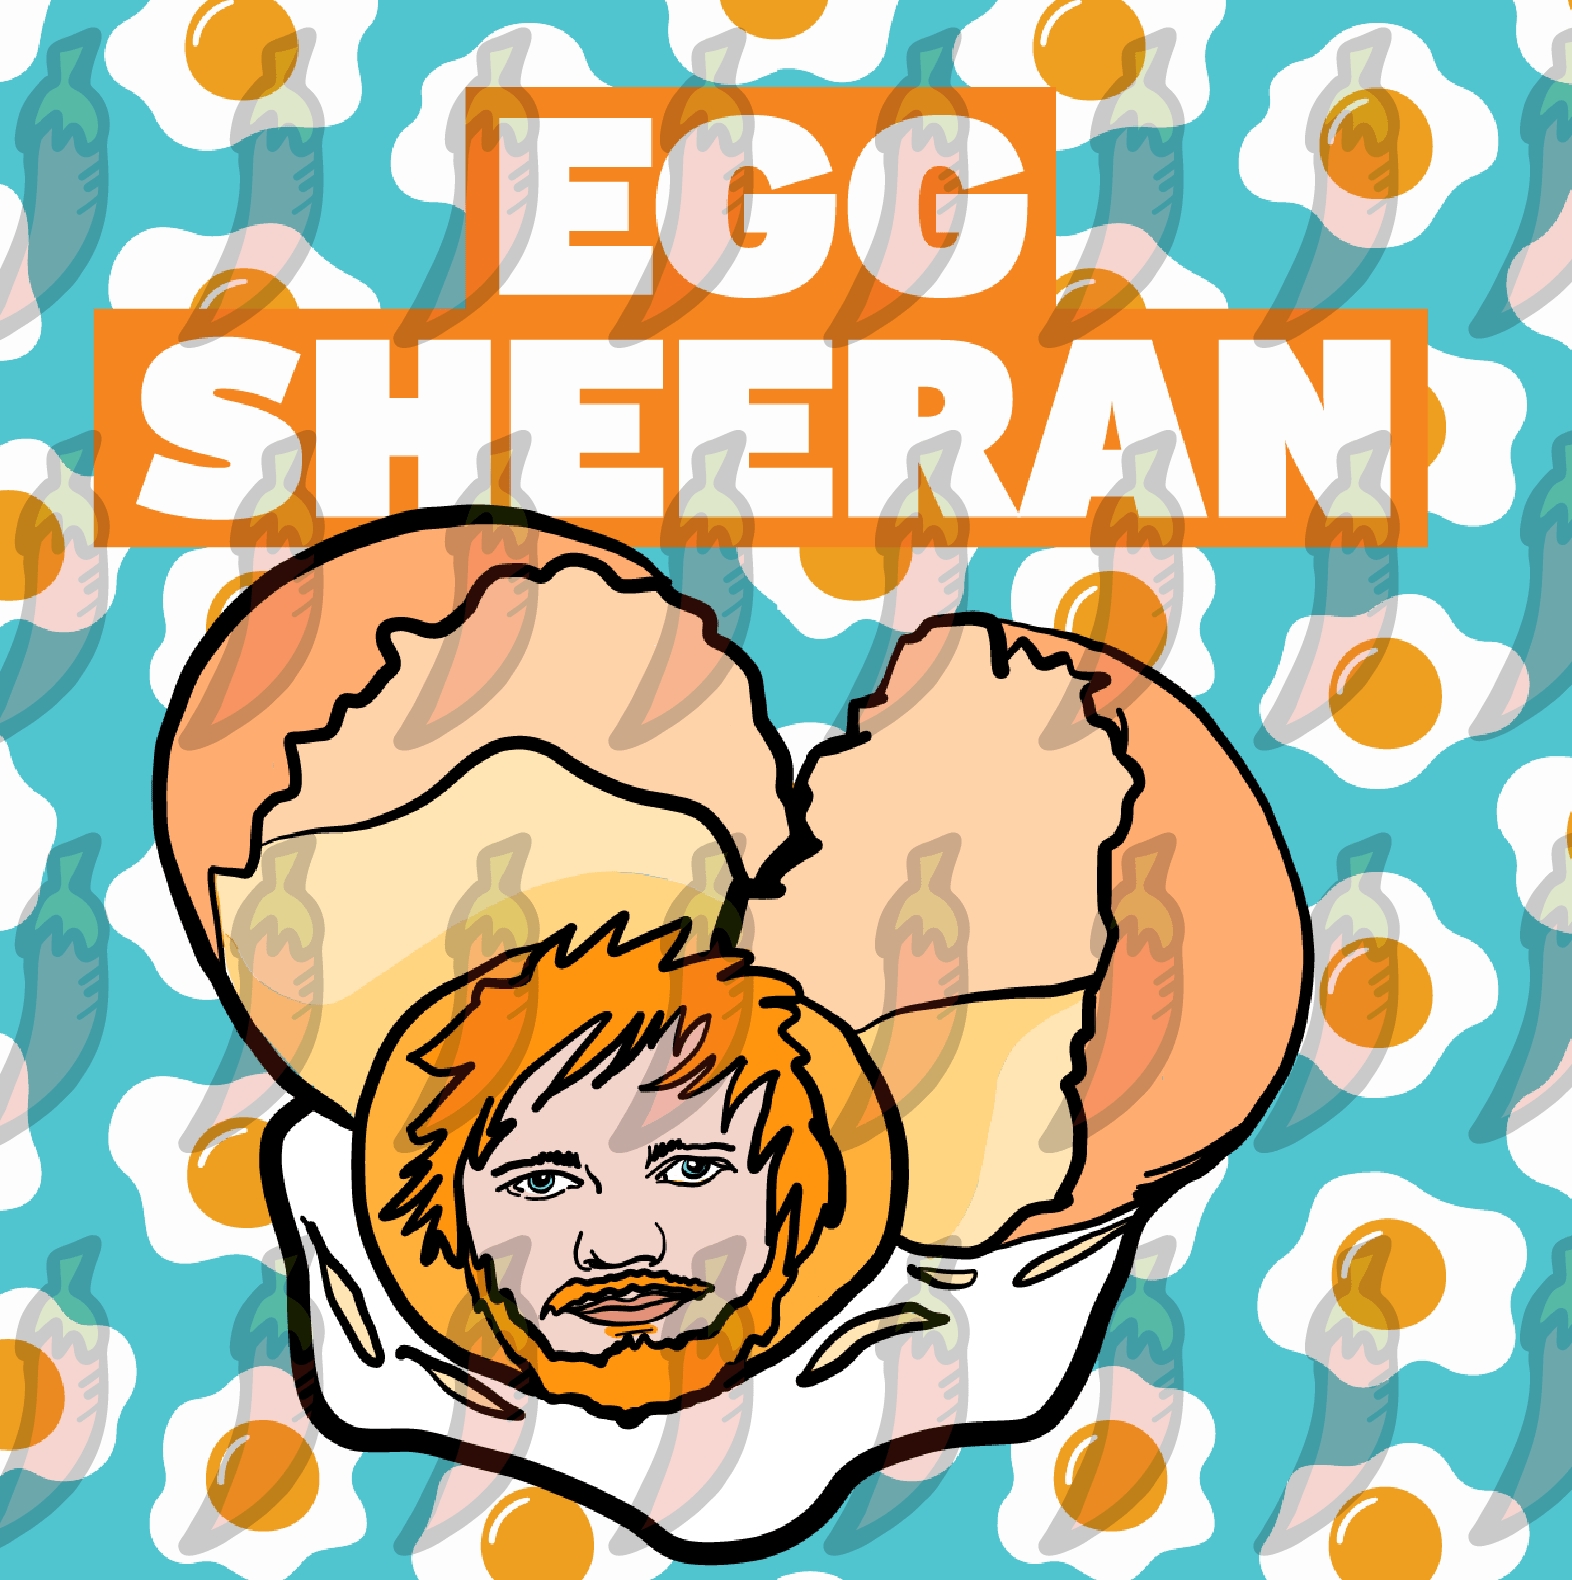 Egg Sheeran 🥚 - Stubby Holder